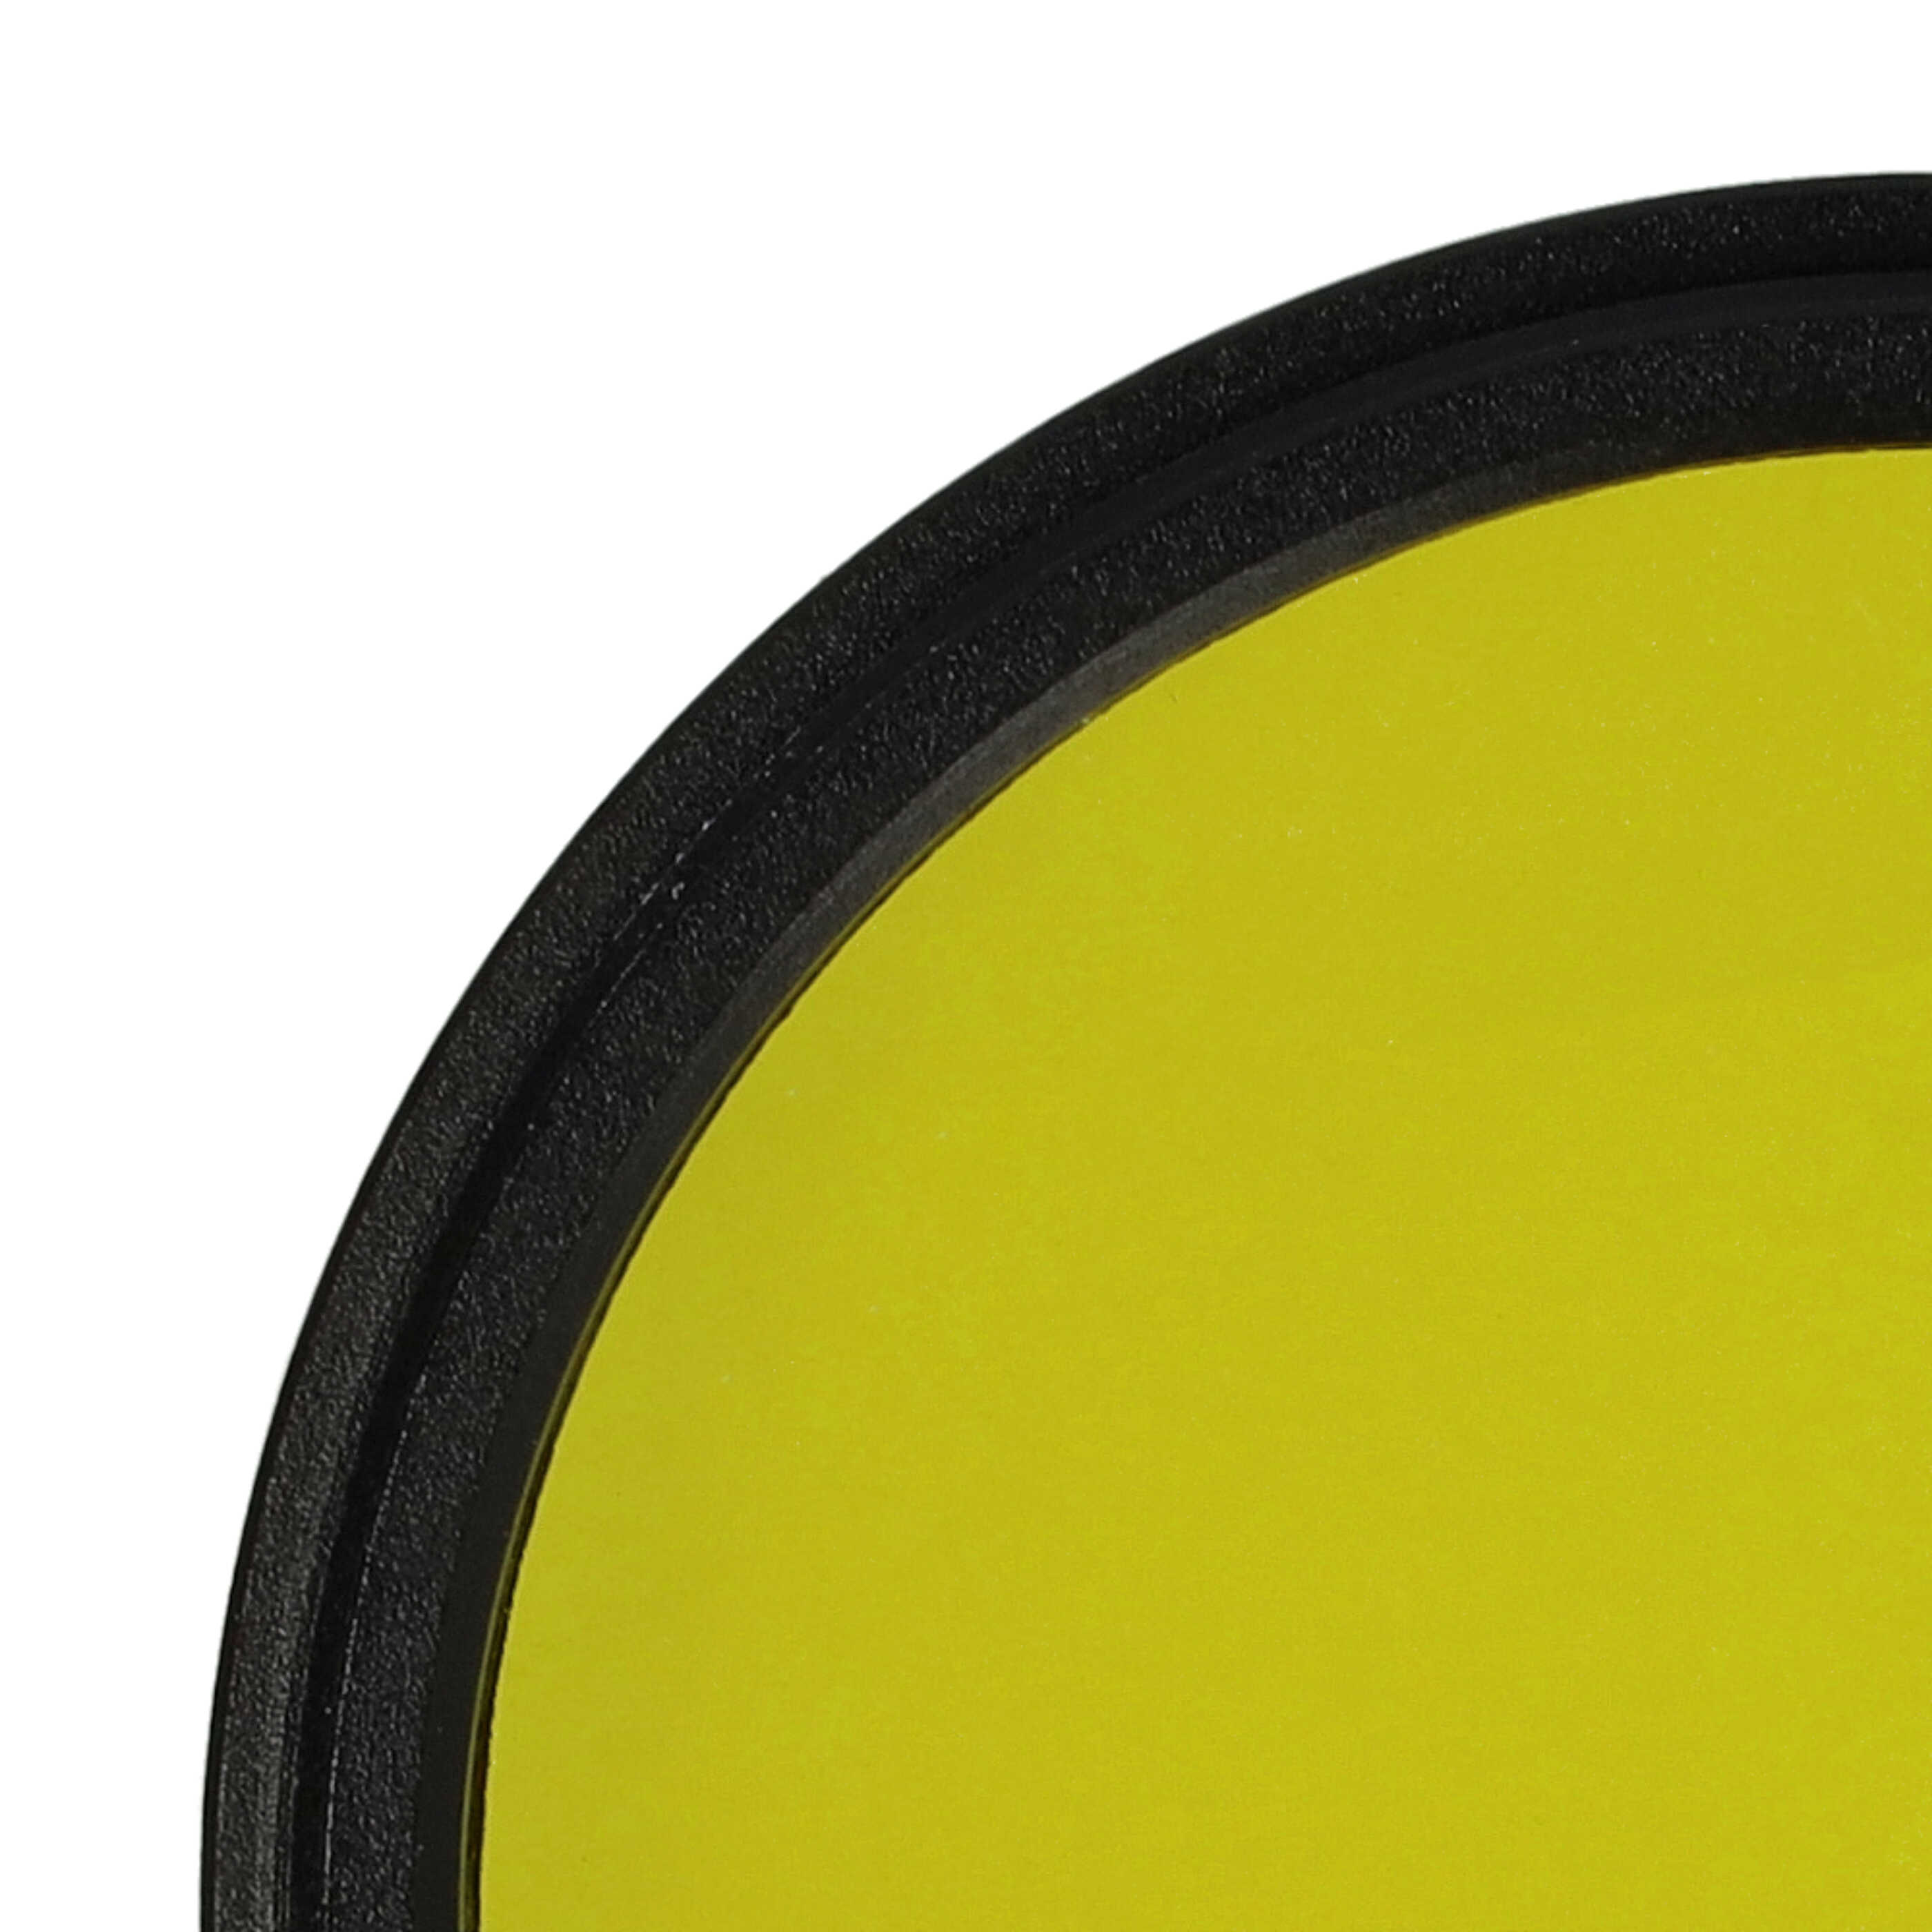 Filtre de couleur jaune pour objectifs d'appareils photo de 43 mm - Filtre jaune